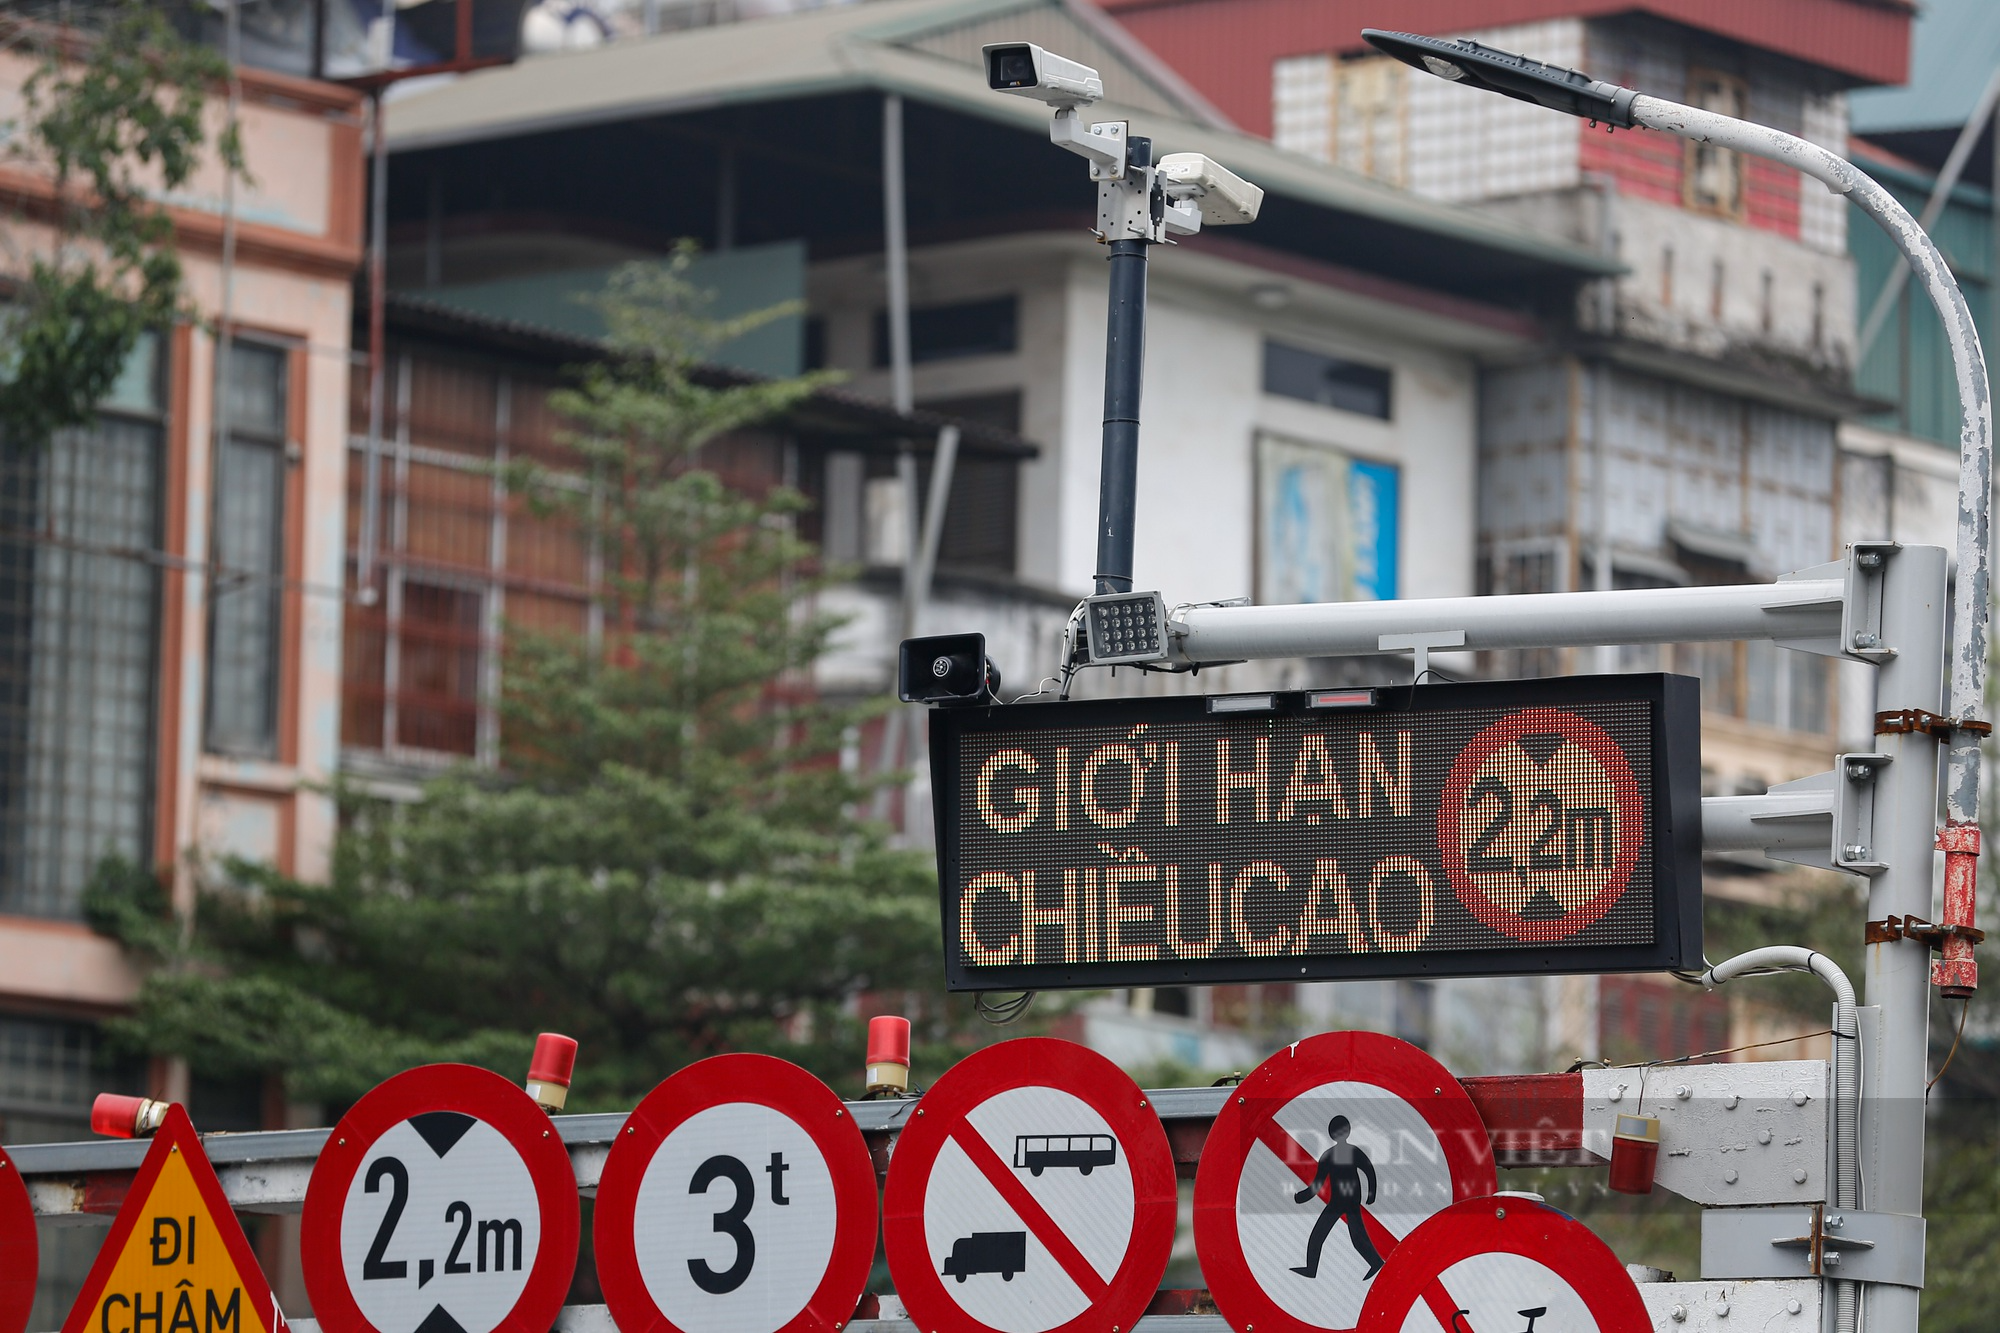 Mục sở thị biển báo giao thông điện tử Hà Nội đang thí điểm nhằm giảm ùn tắc - Ảnh 4.